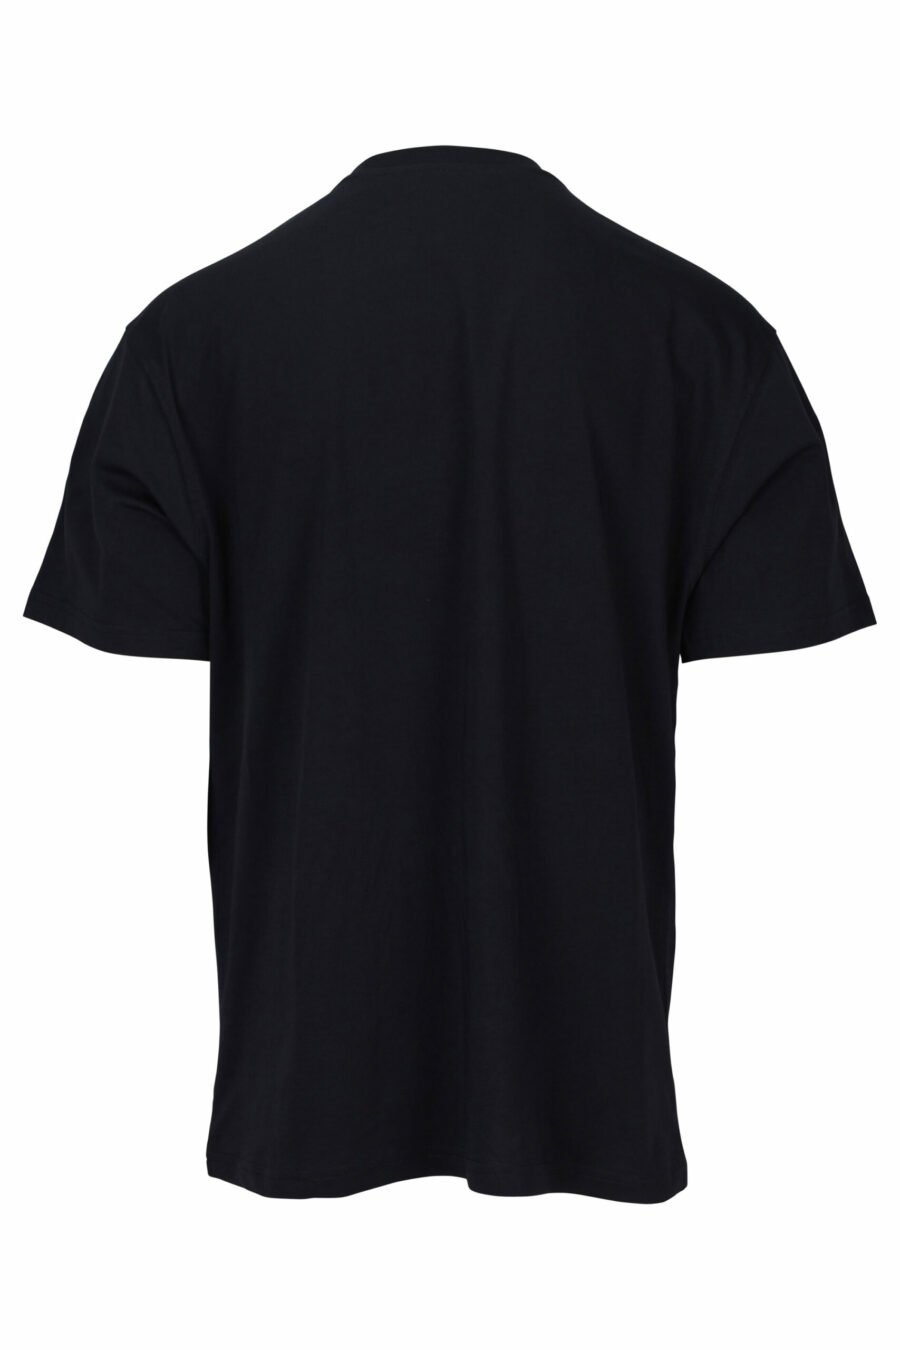 Camiseta negra con maxilogo bordado con detalles naranjas - 889316957471 1 scaled